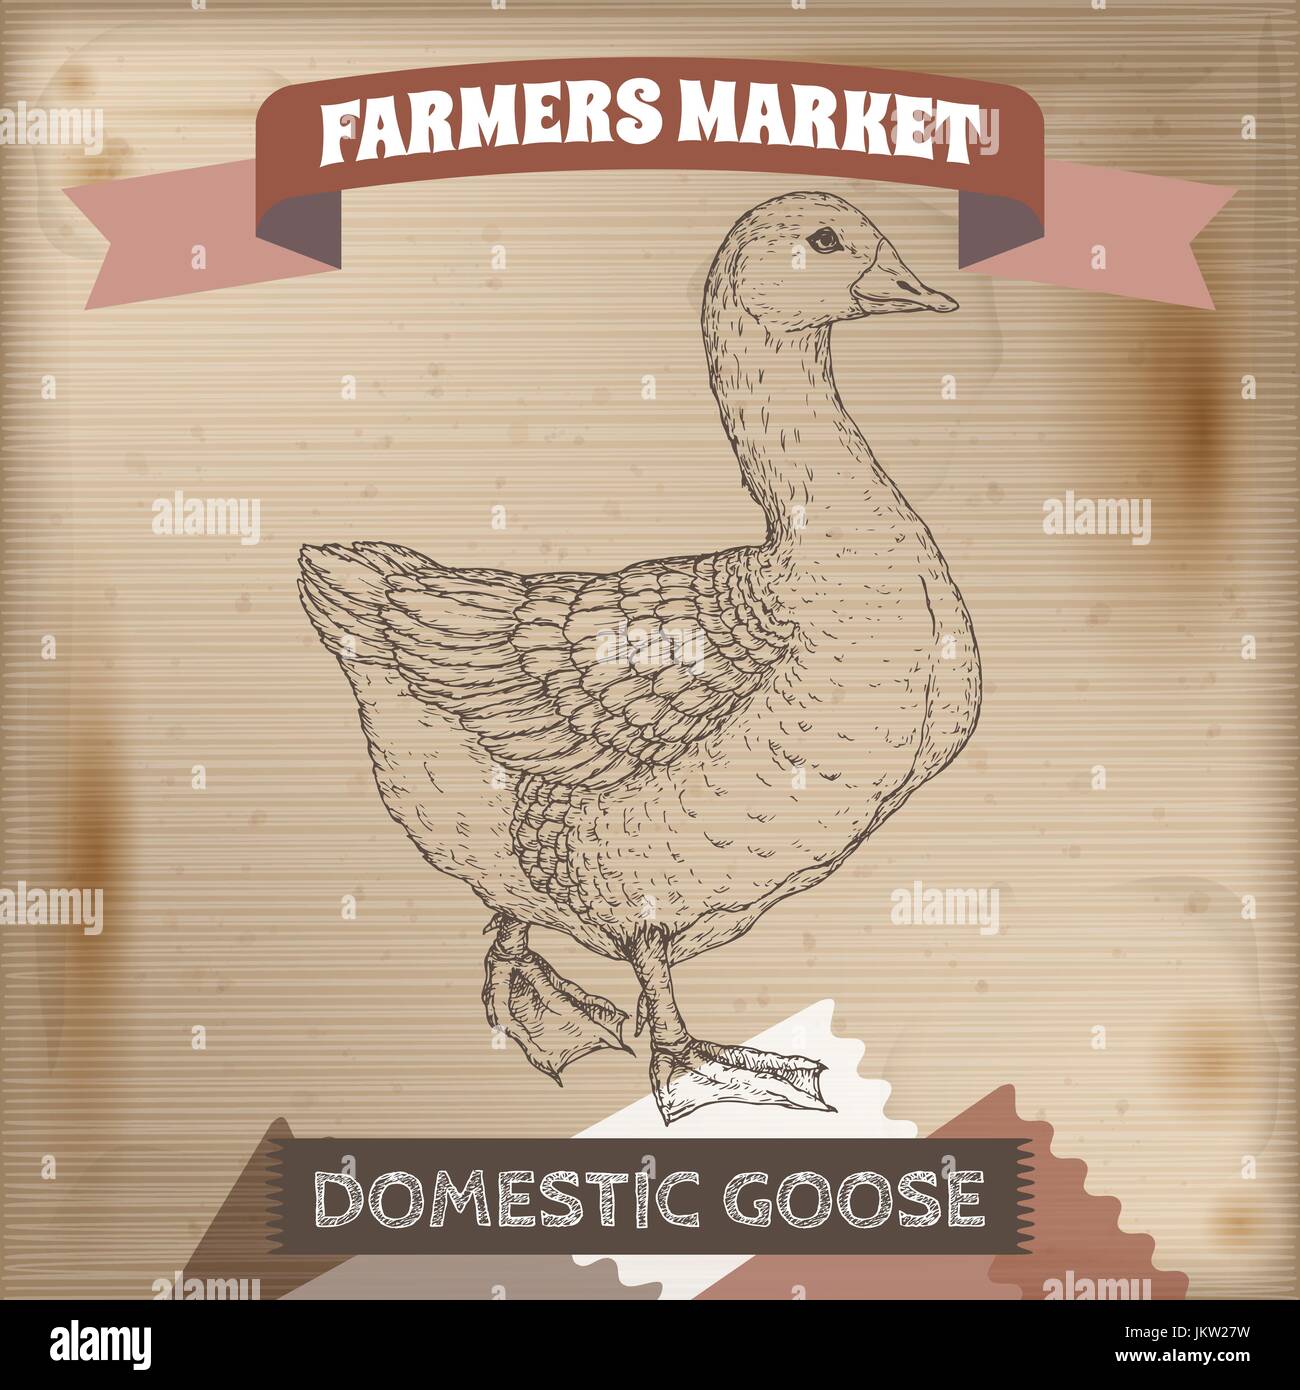 Vintage farmers market label avec l'oie domestique. Illustration de Vecteur